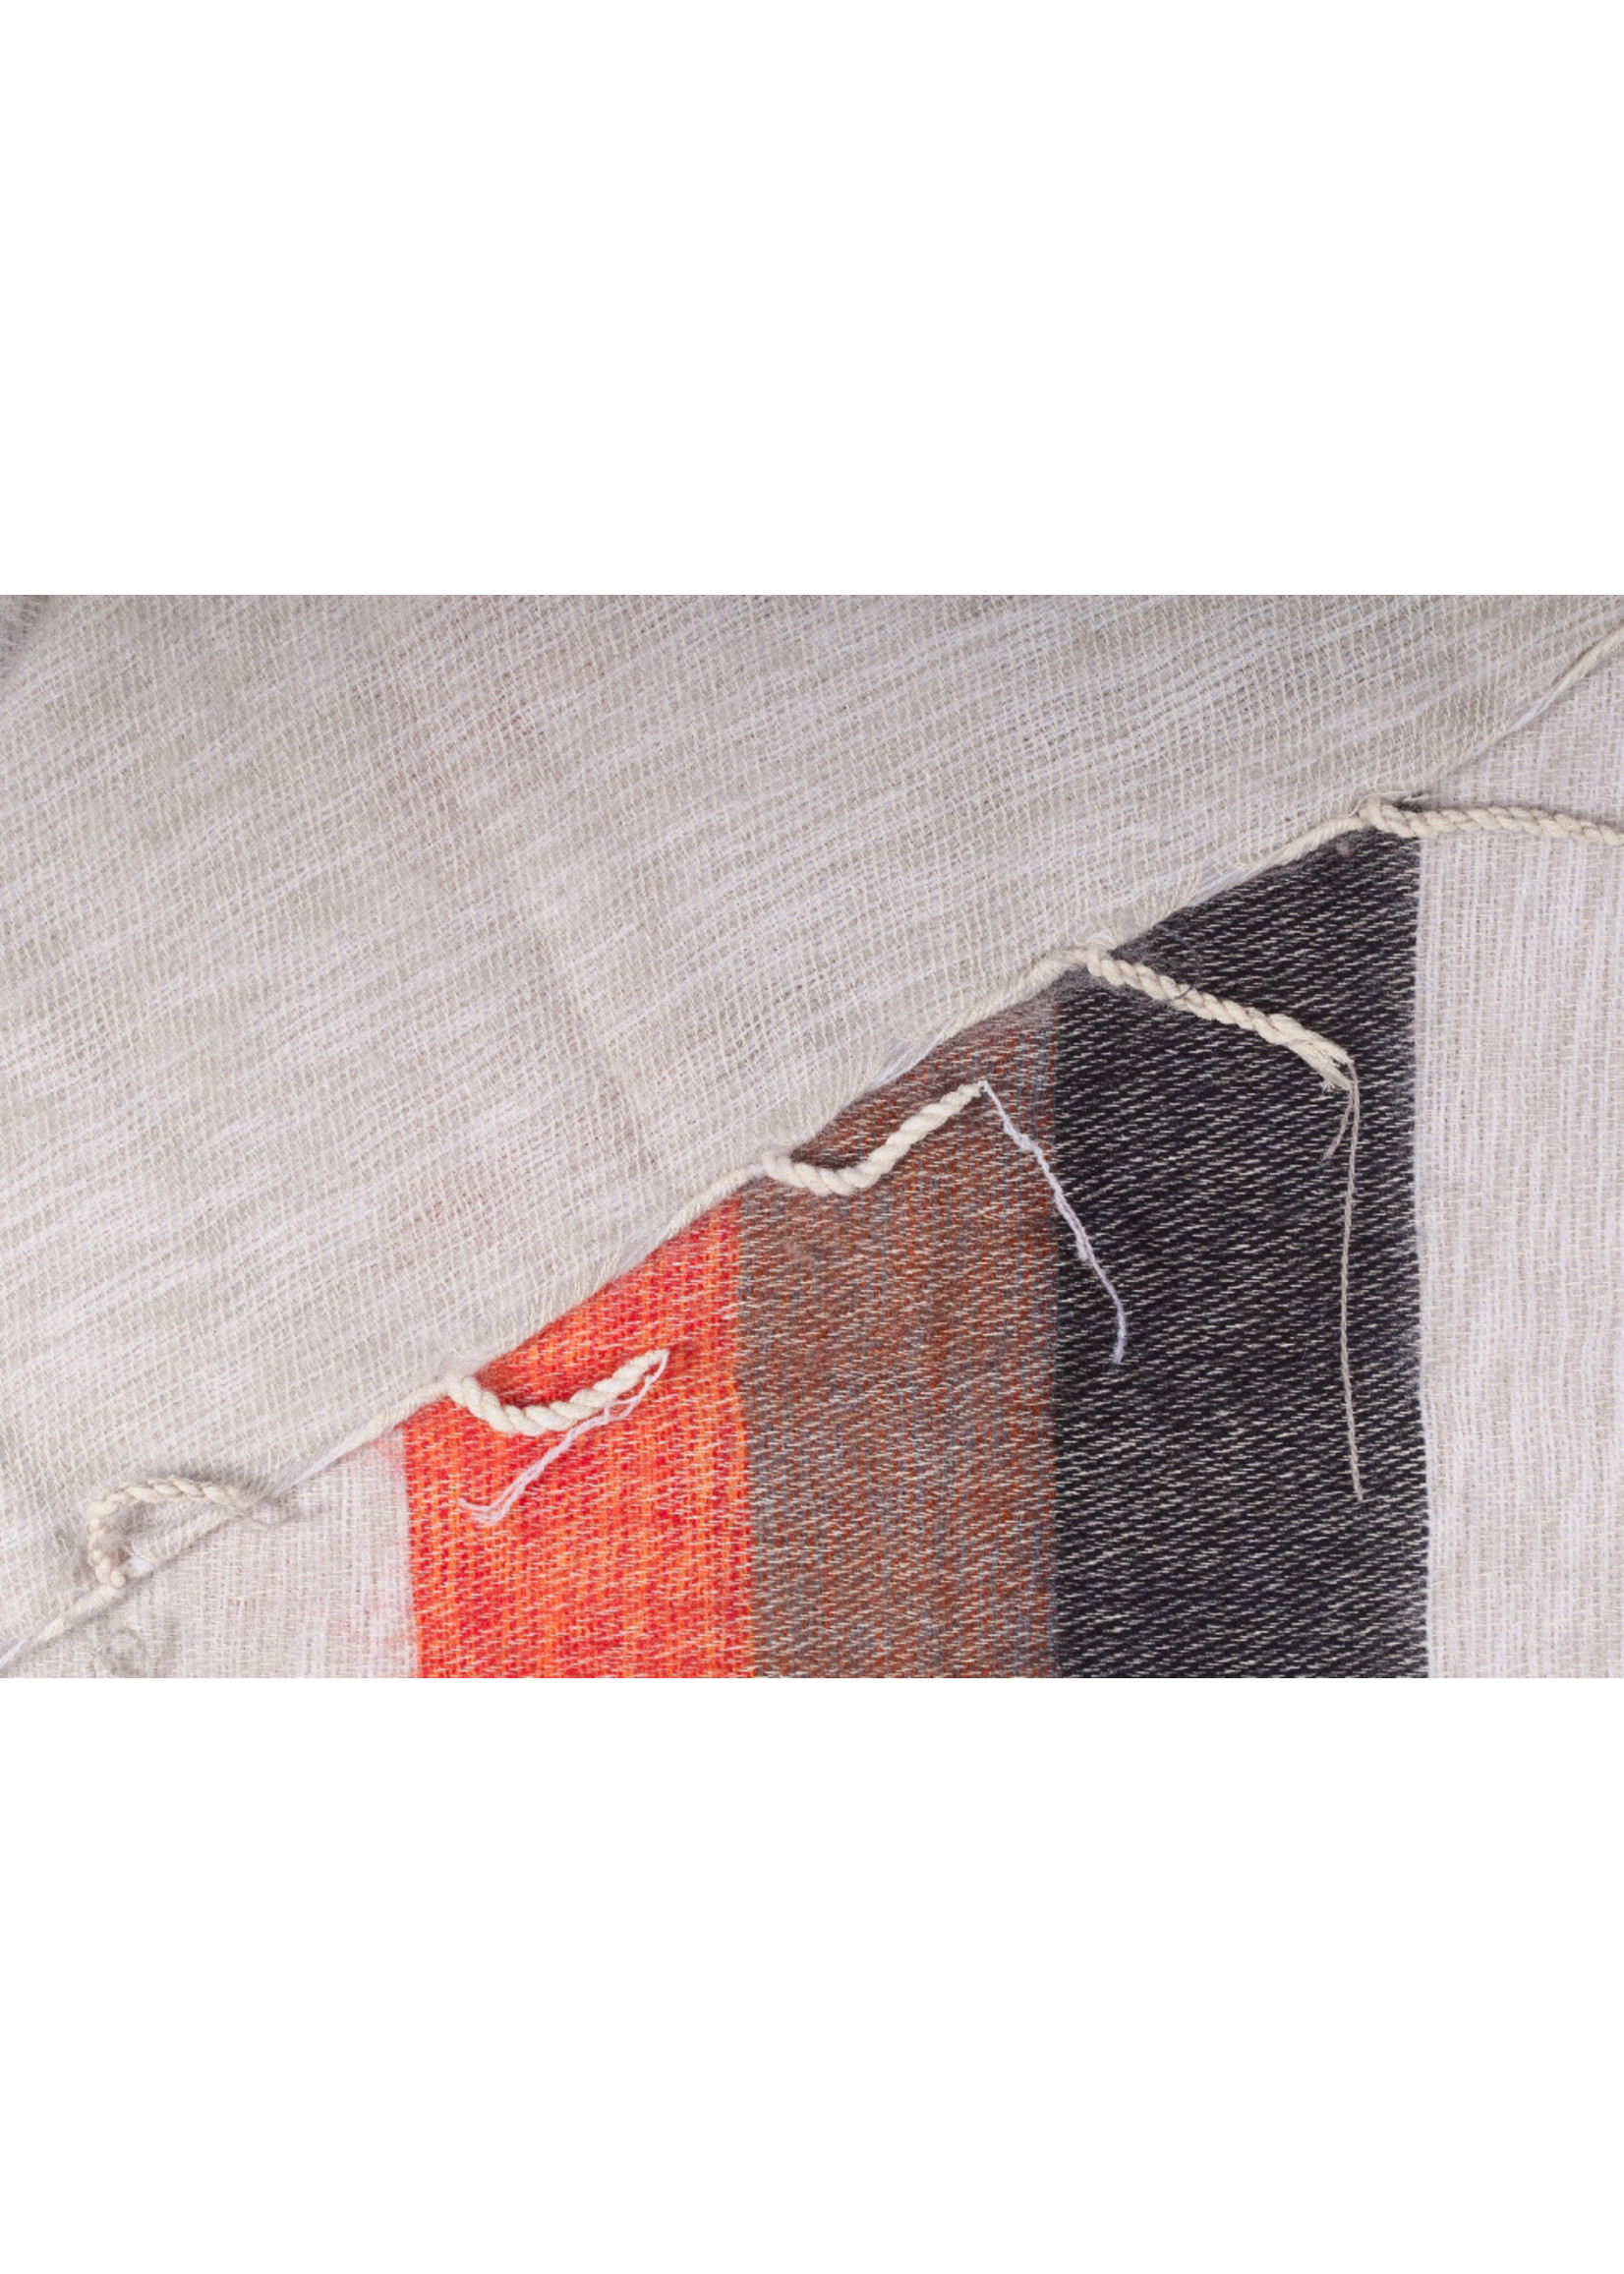 Sjaal met Verhaal Sjaal katoen+acryl (wol-look) 180x80 cm creme-taupe-oranje